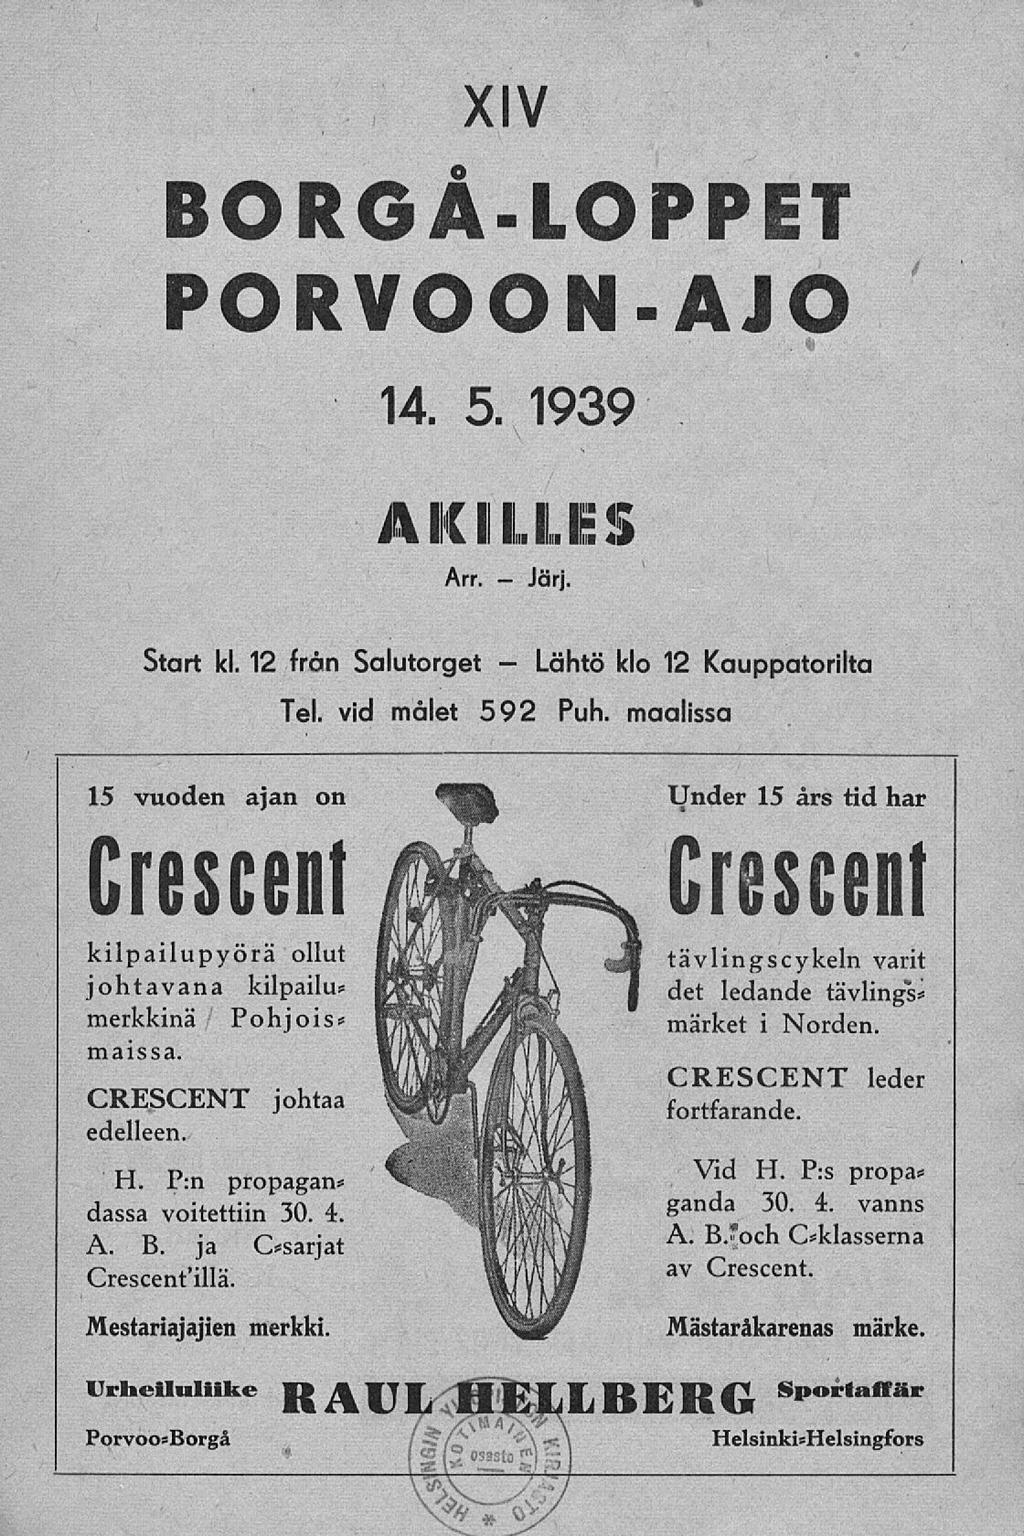 Lähtö XIV BORGA-LOPPET PORVOON-AJO Start kl. 12 från Salutorget - Tel. vid målet 14. 5. 1939 AKILLES Arr. Järj. klo 12 Kauppatorilta 592 Puh.